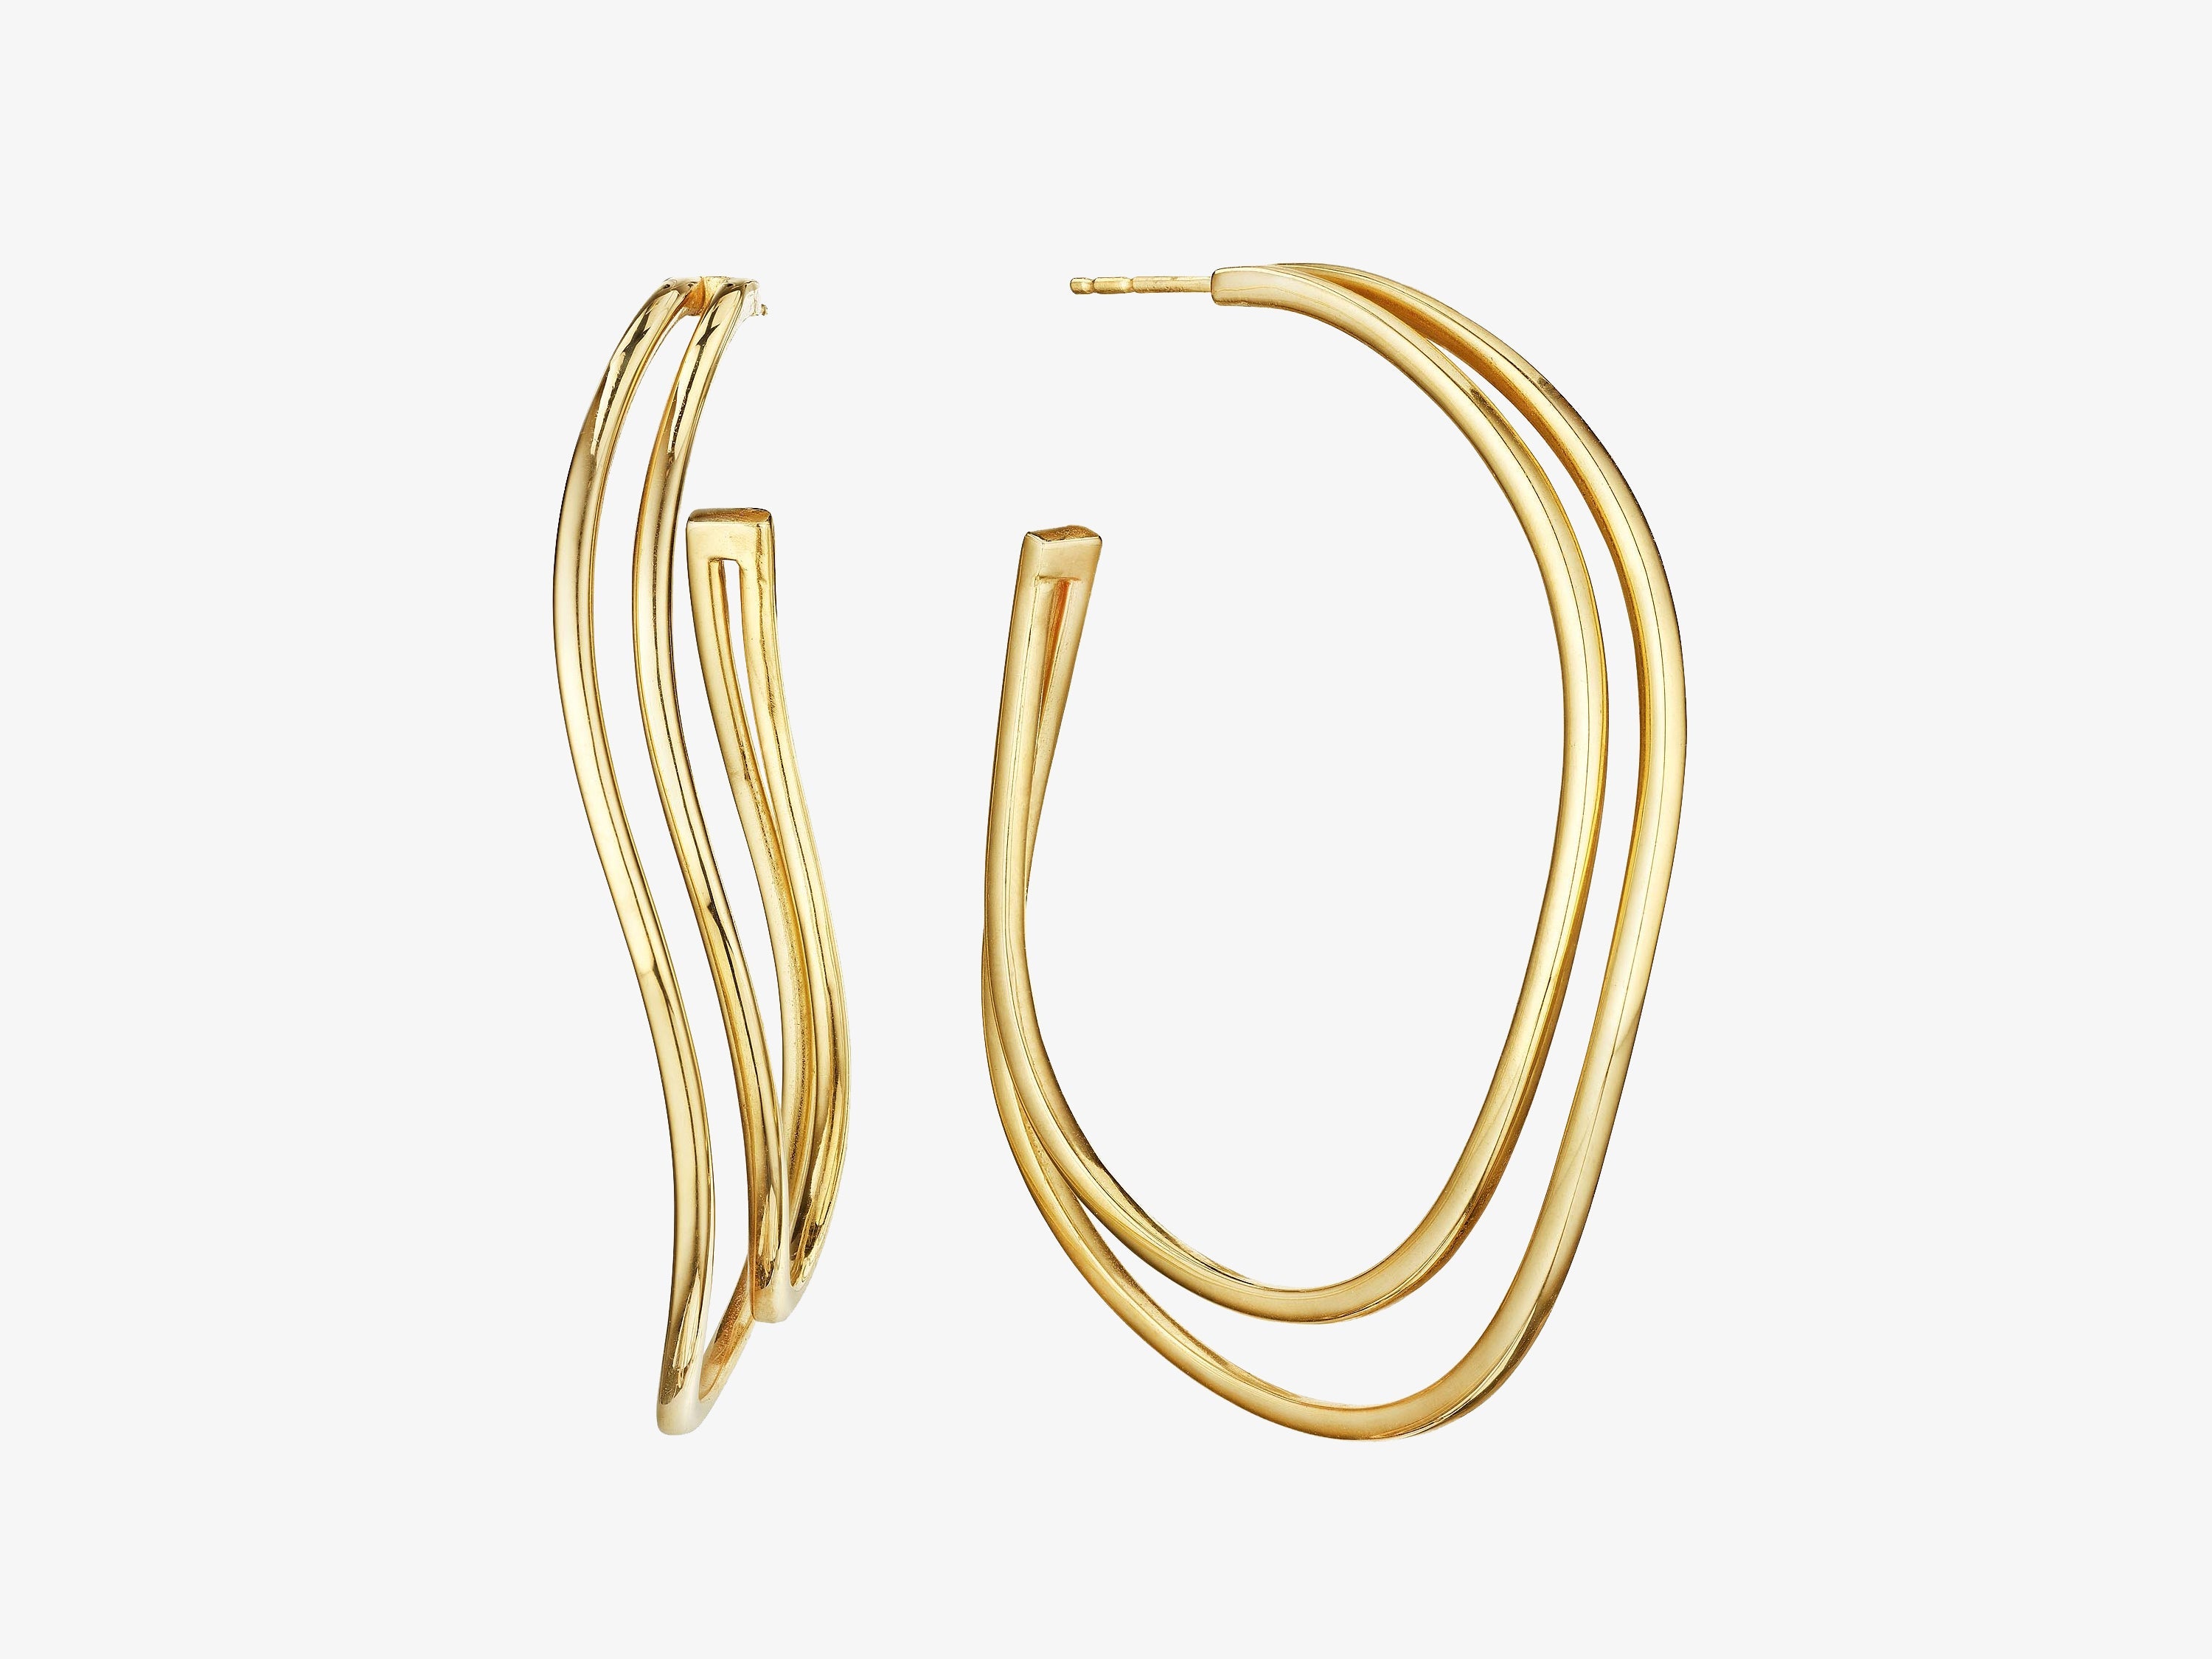 All Gold Two Row Hoop Earrings, 2”